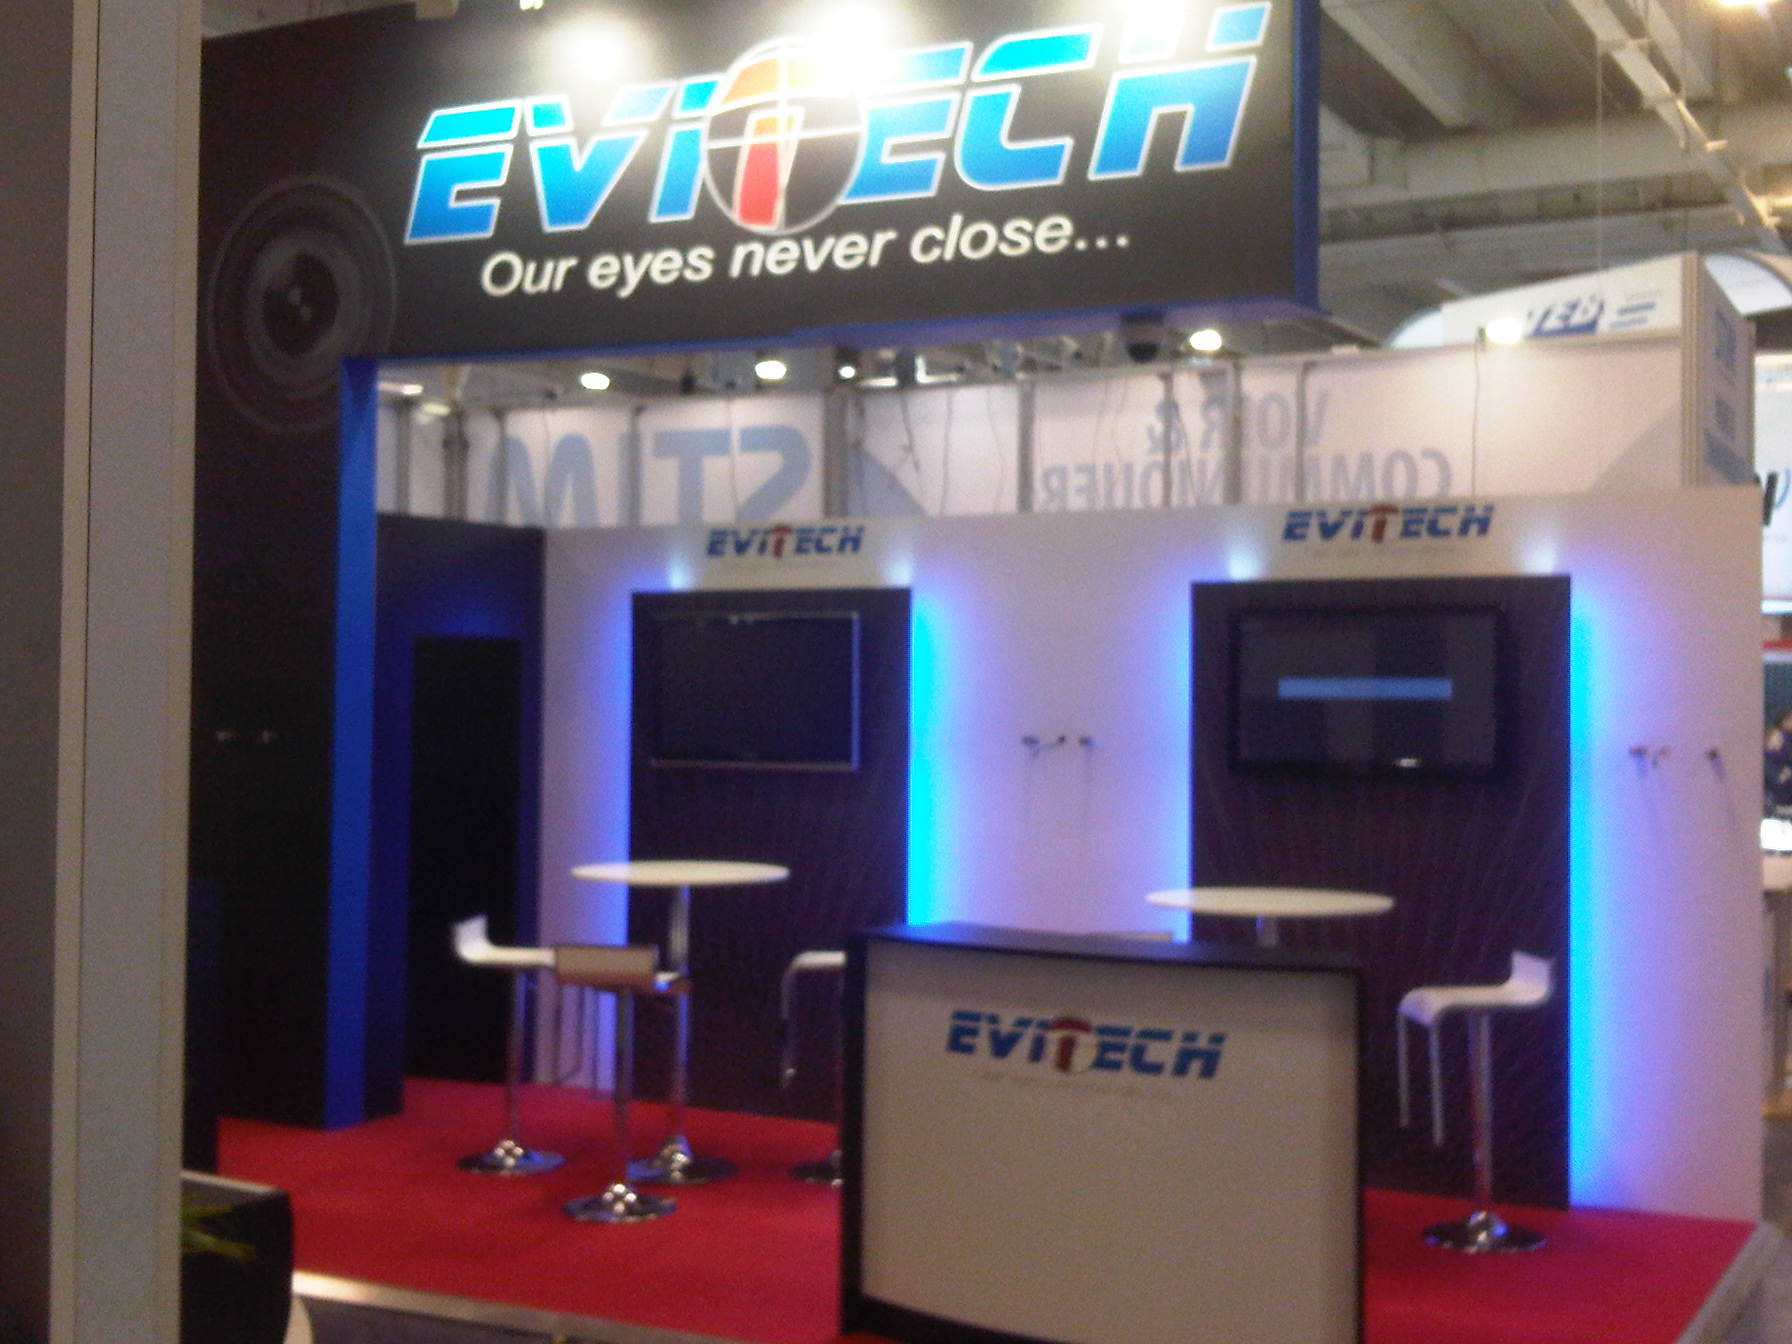 Stand_Expo12 Evitech - Vidéo surveillance intelligente - Evitech - Vidéo surveillance intelligente